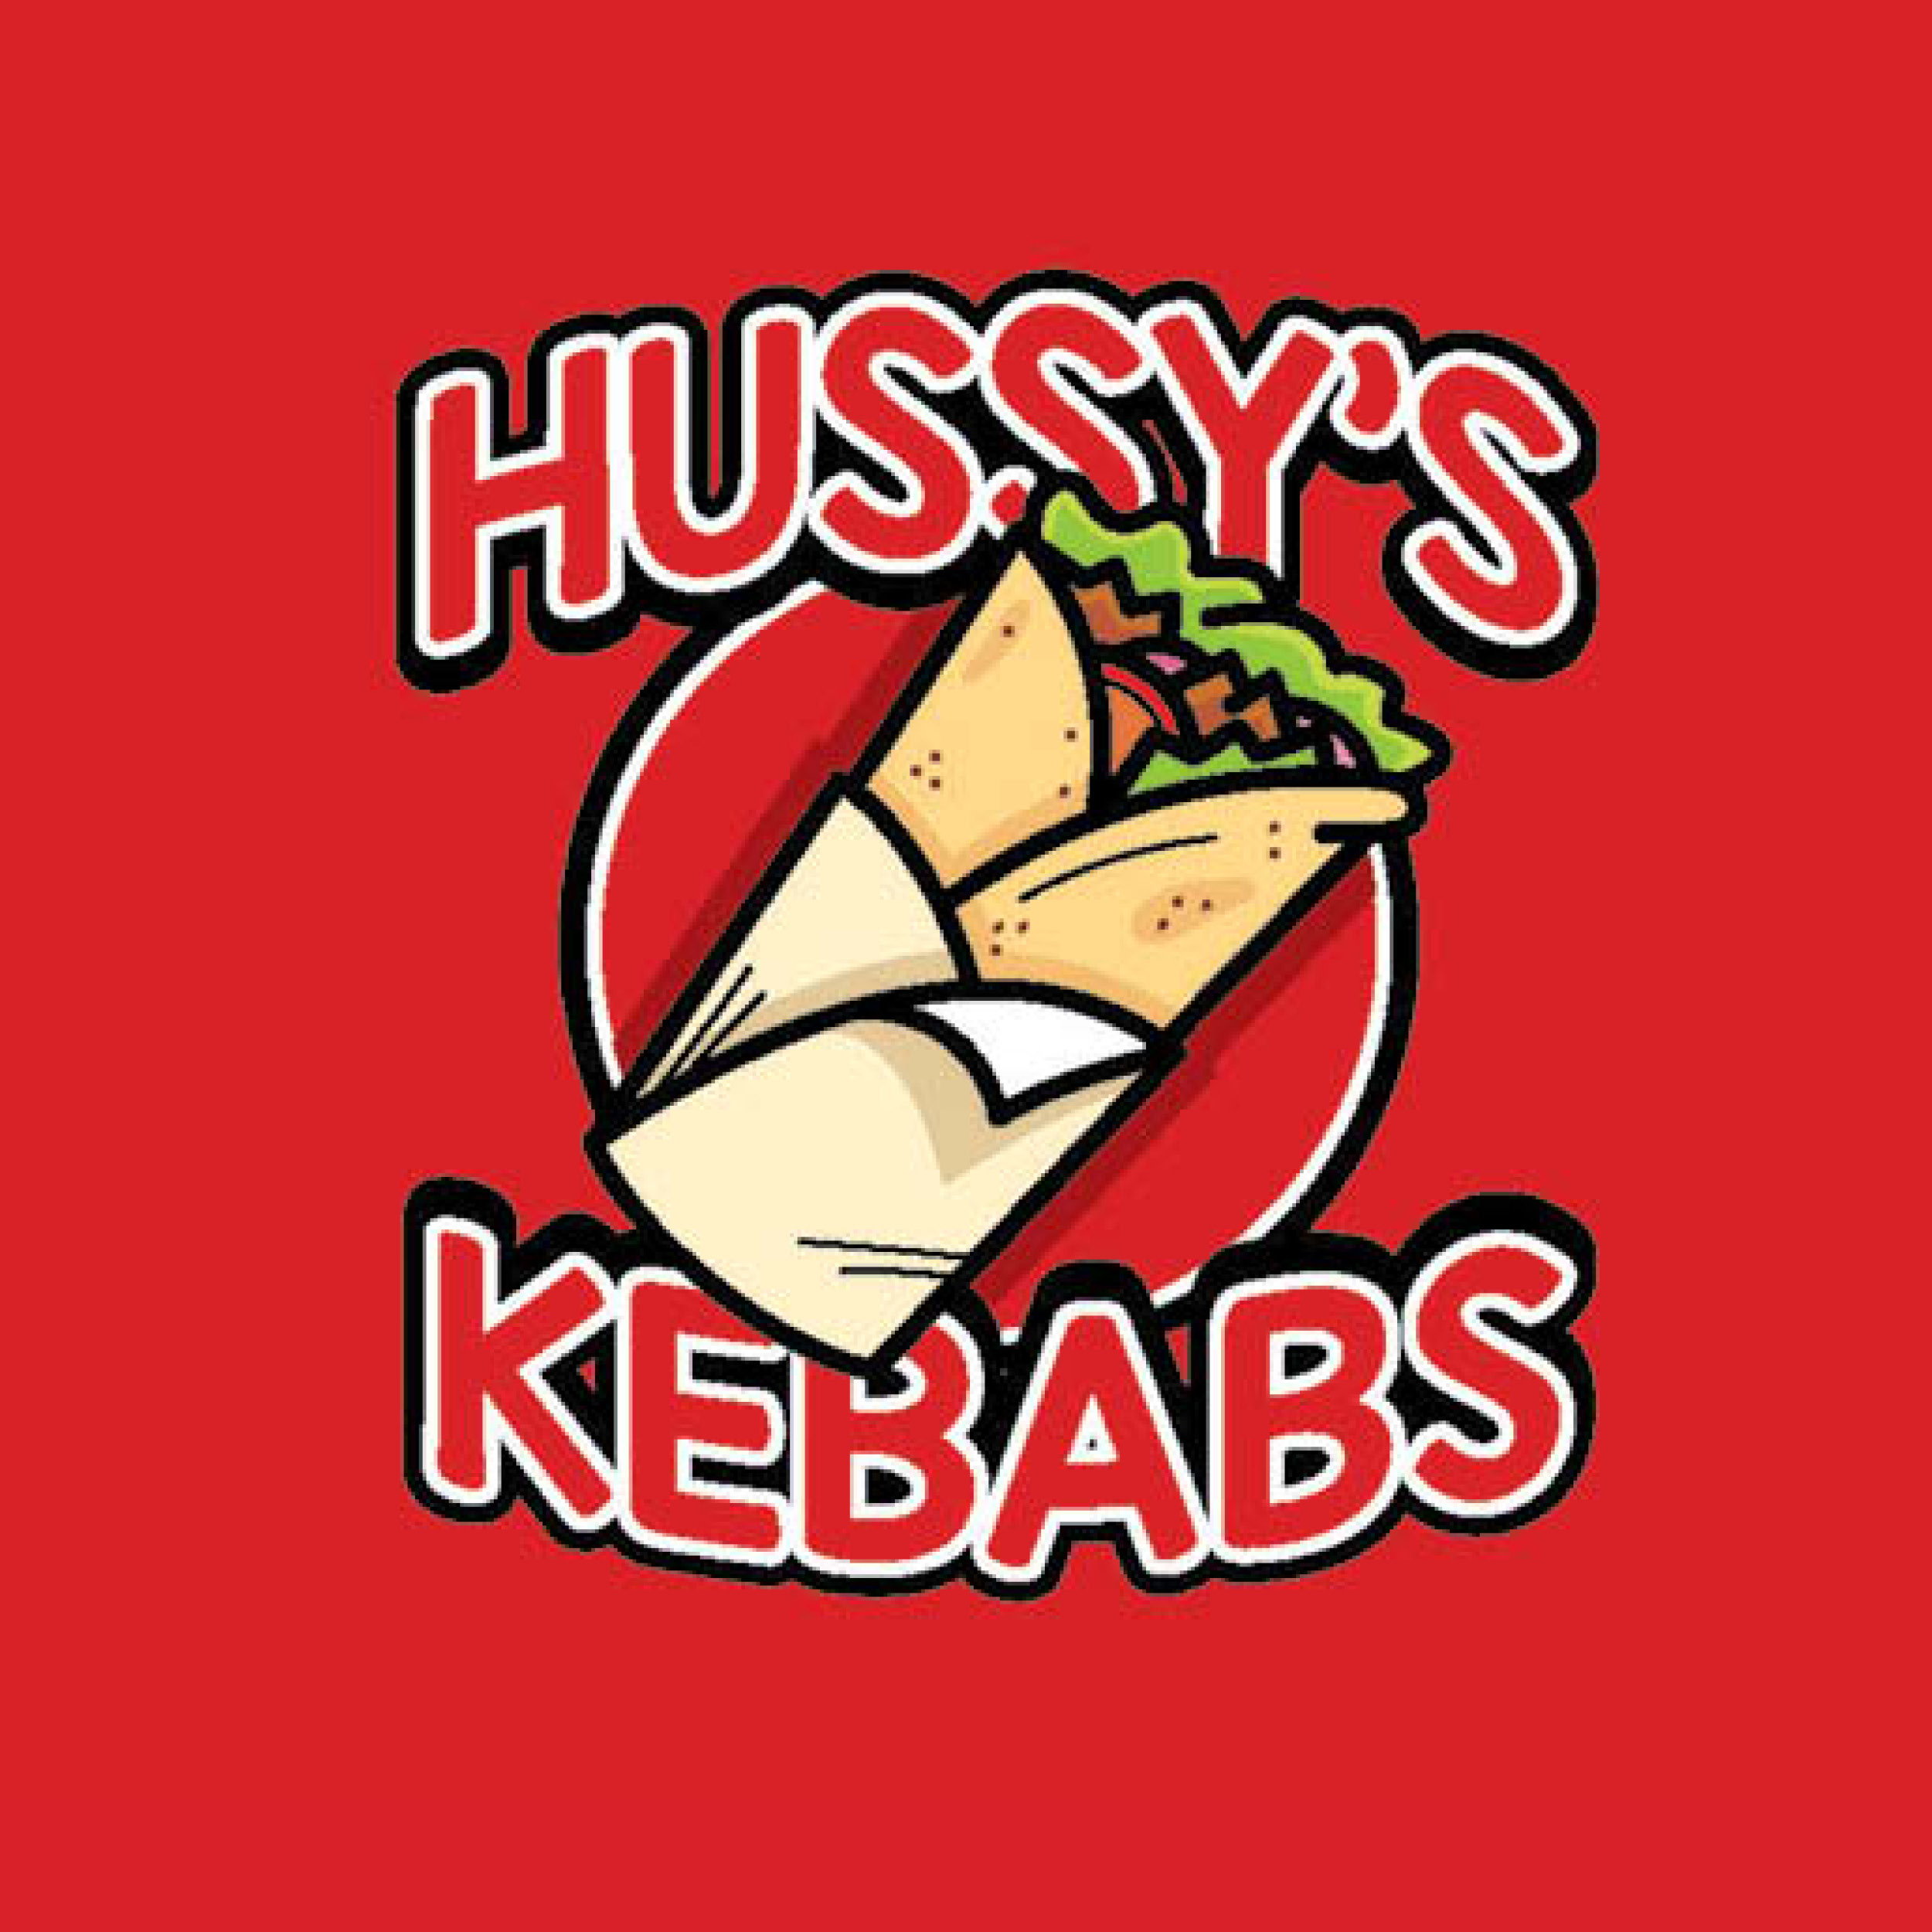 Hussy's Kebabs